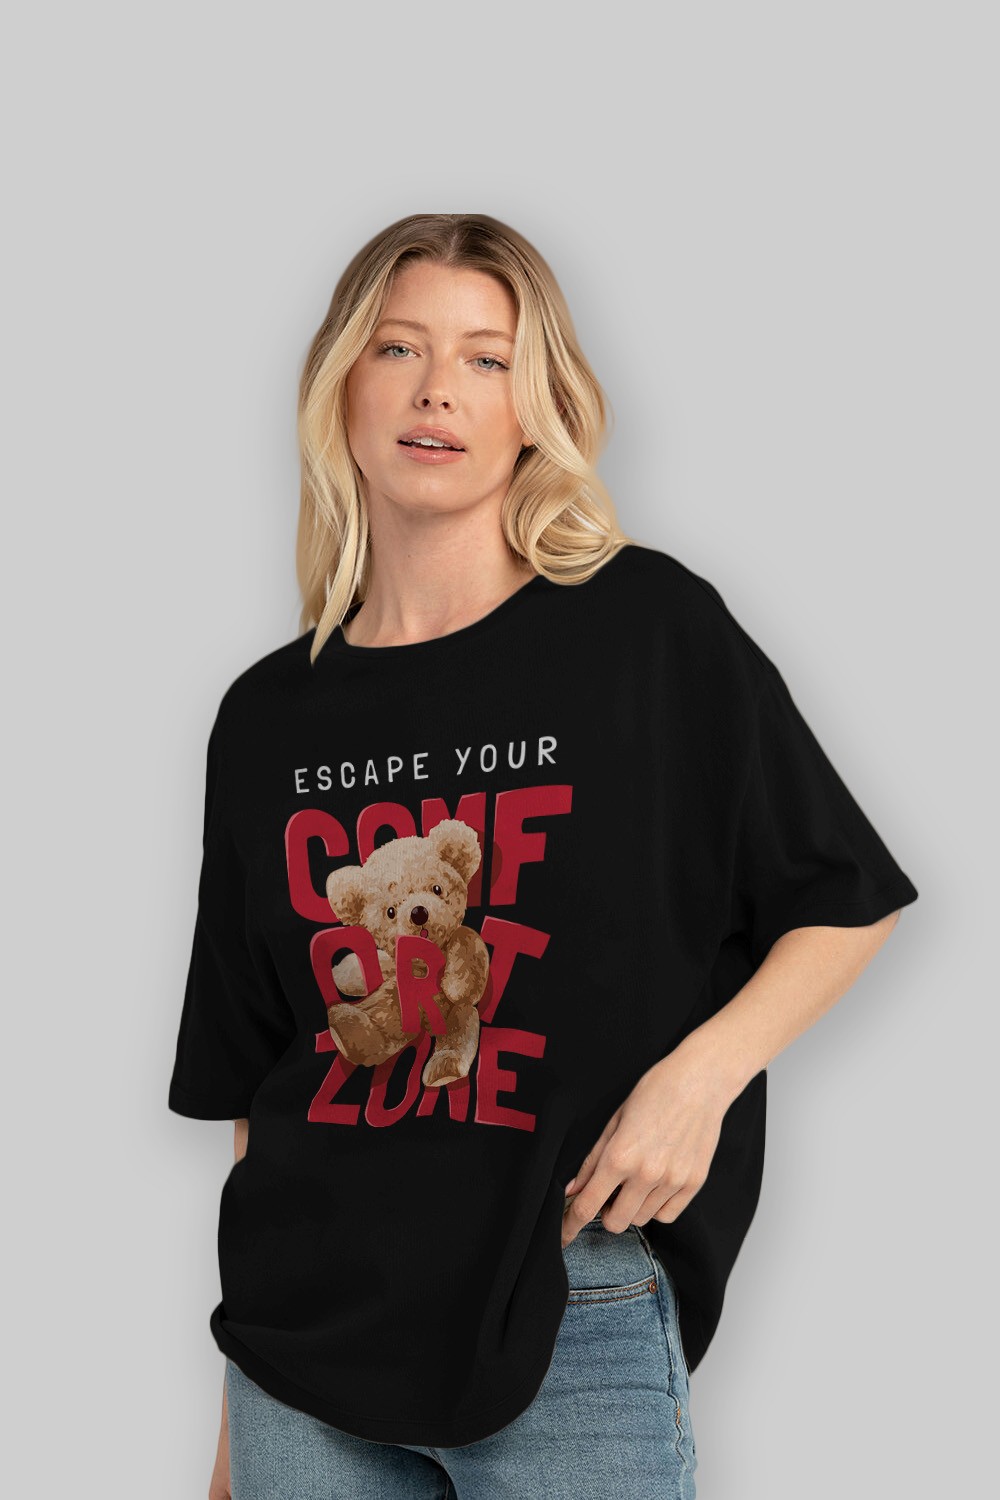 Teddy Bear Escape Comfort Zone Ön Baskılı Oversize t-shirt Erkek Kadın Unisex %100 Pamuk